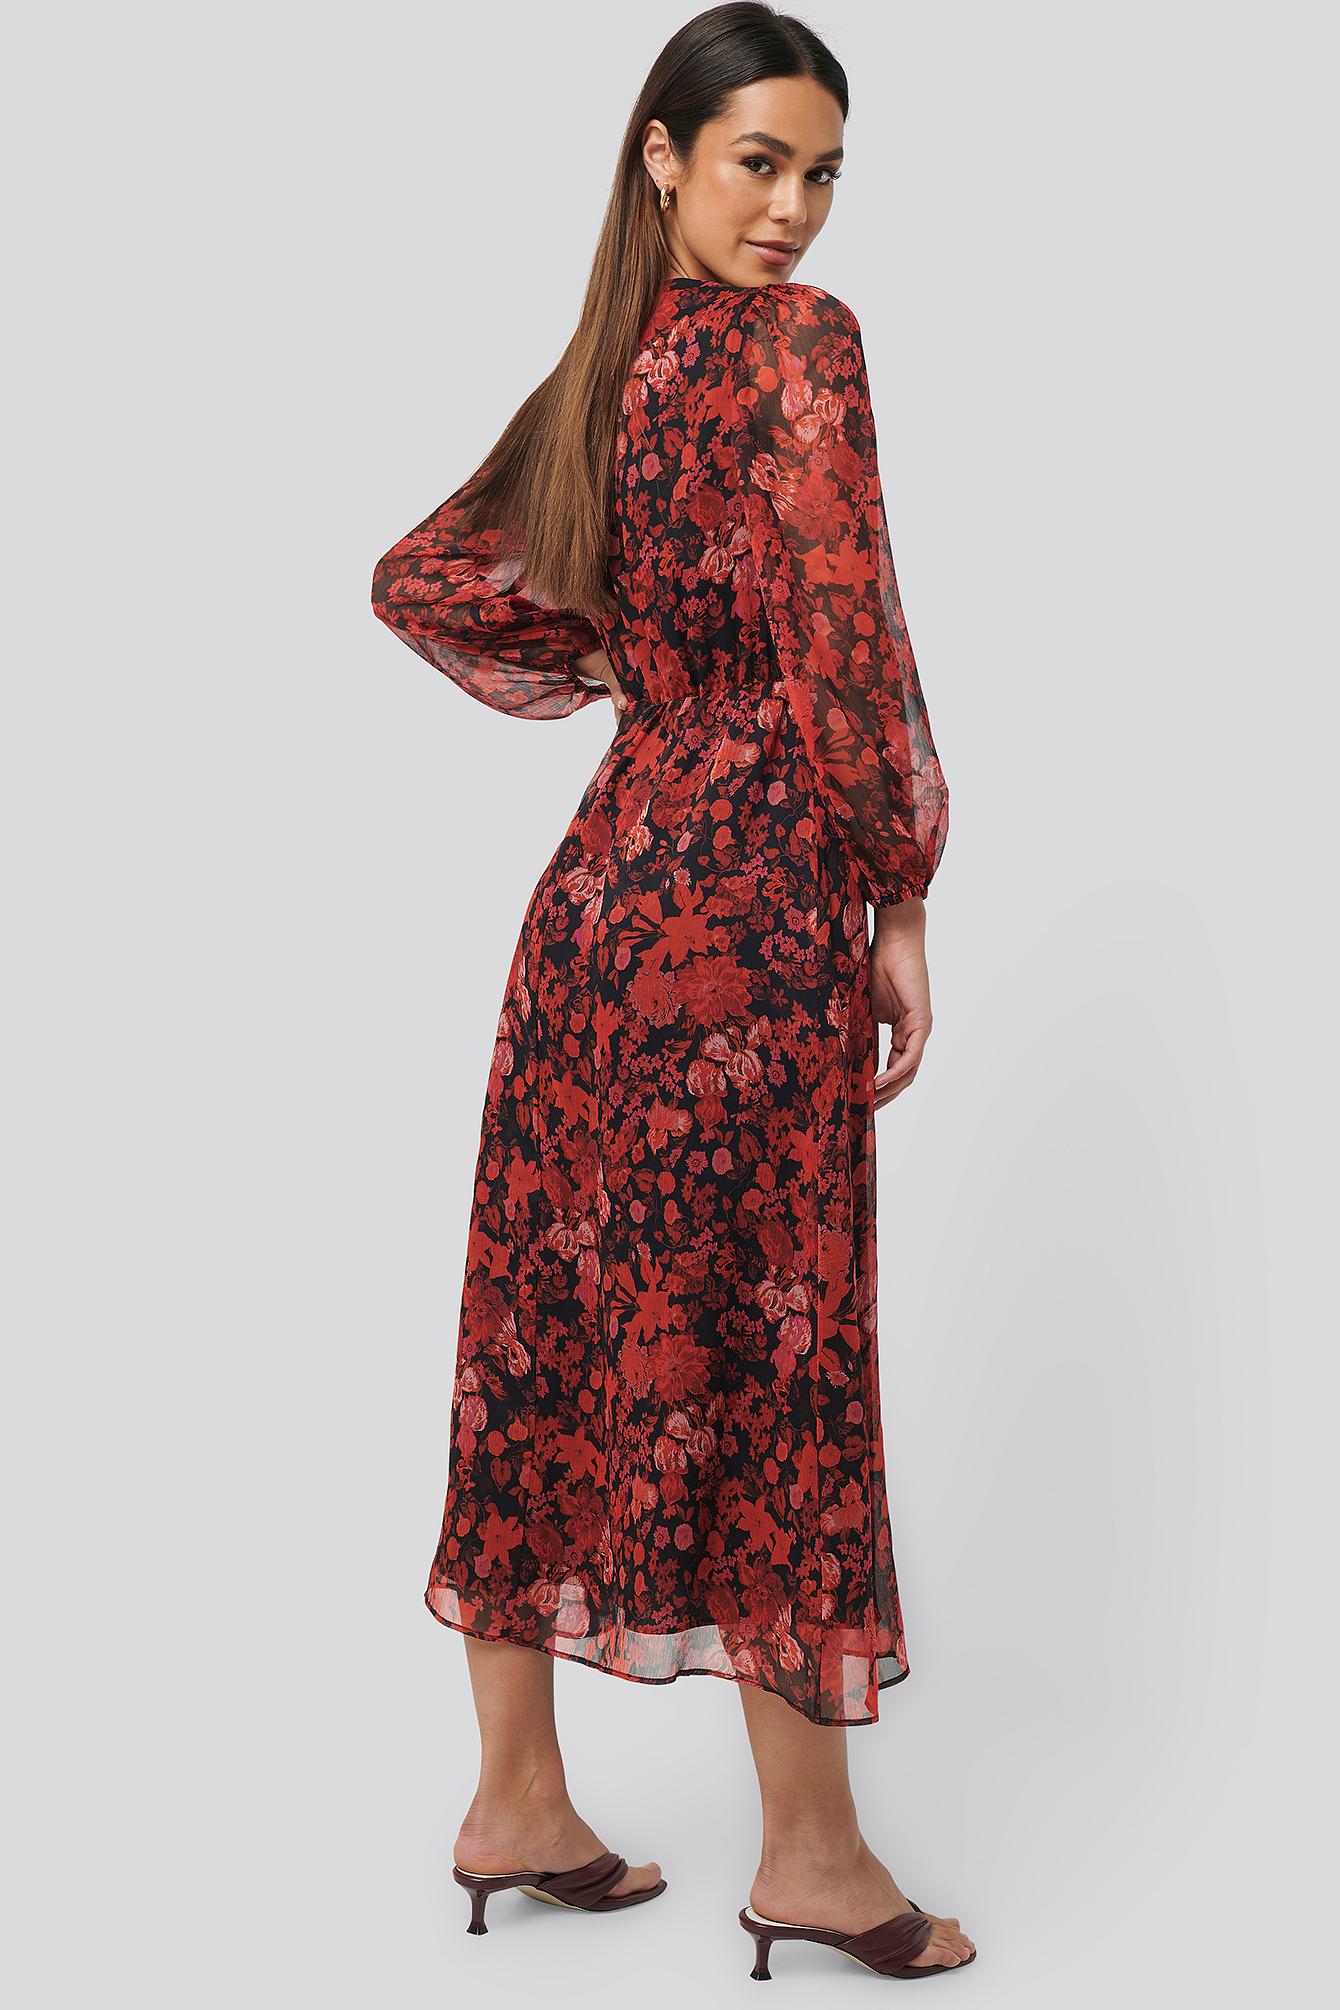 Mango Chiffon Red Winona Dress | Lyst